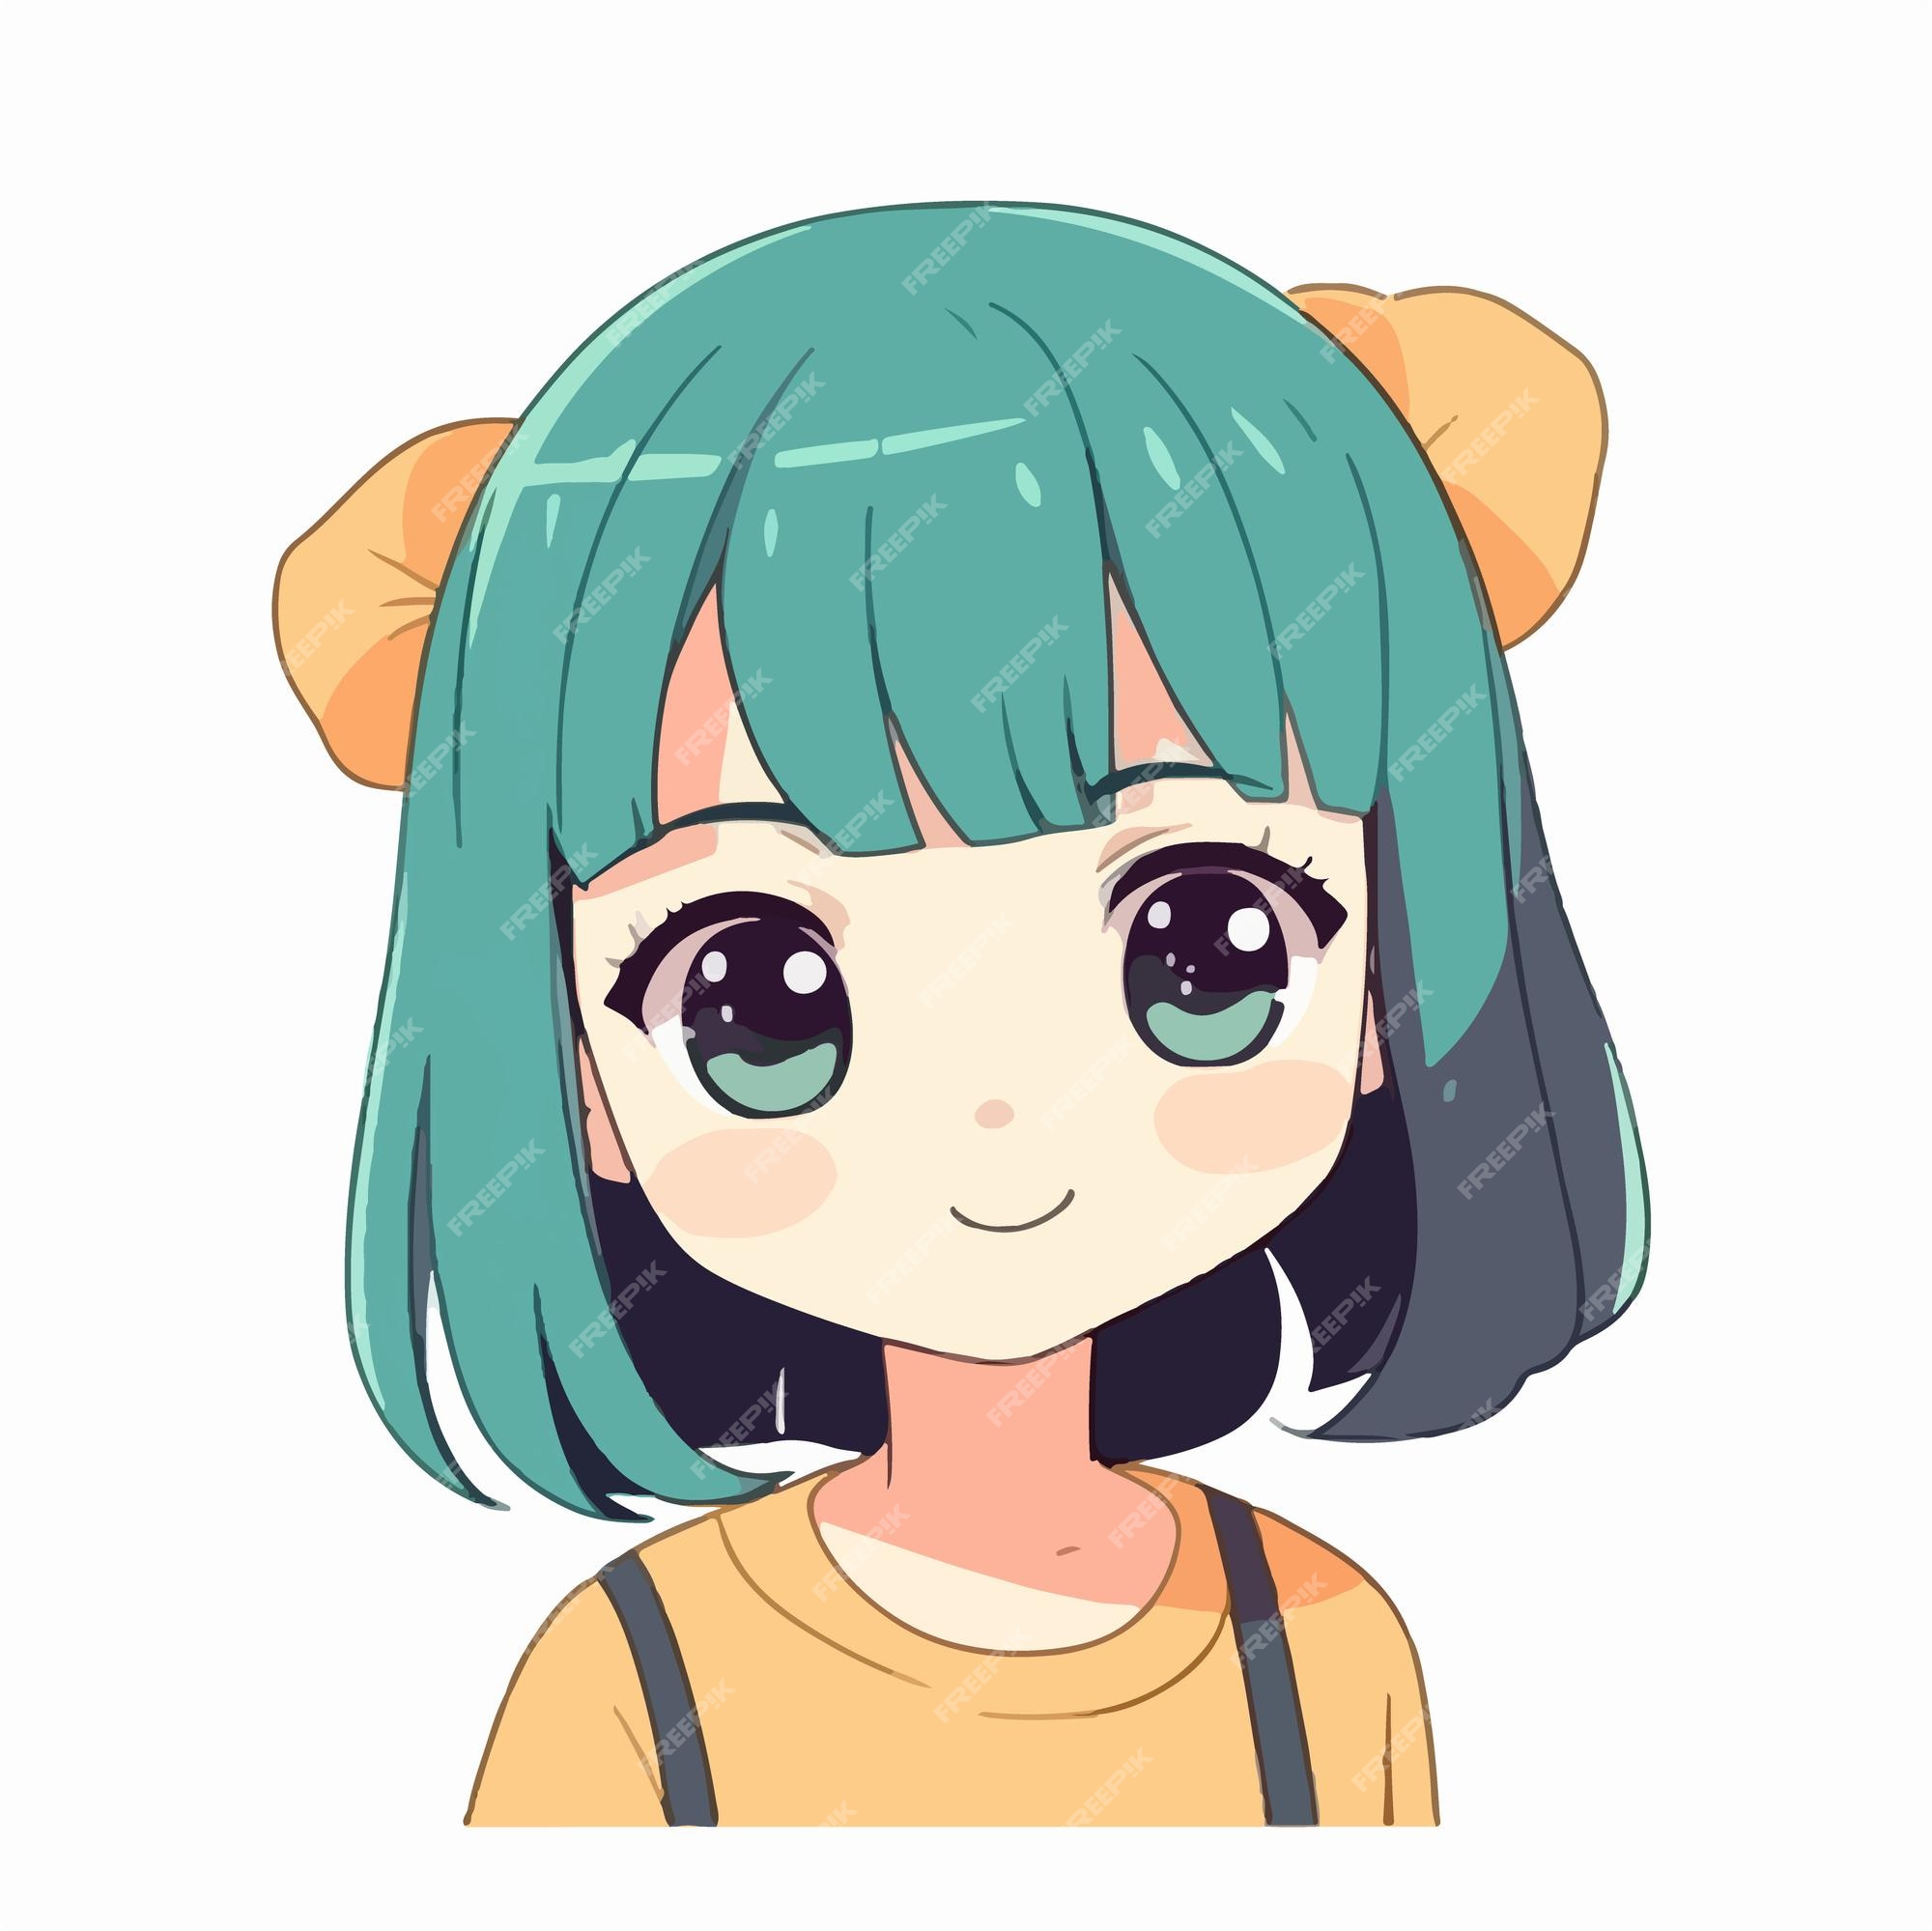 Pequena Personagem Kawaii Engraçada. Ilustração De Desenho 3d De Uma Garota  Bonita De Desenho Em Um Pano De Fundo Azul Ilustração Stock - Ilustração de  azul, jogo: 243403156